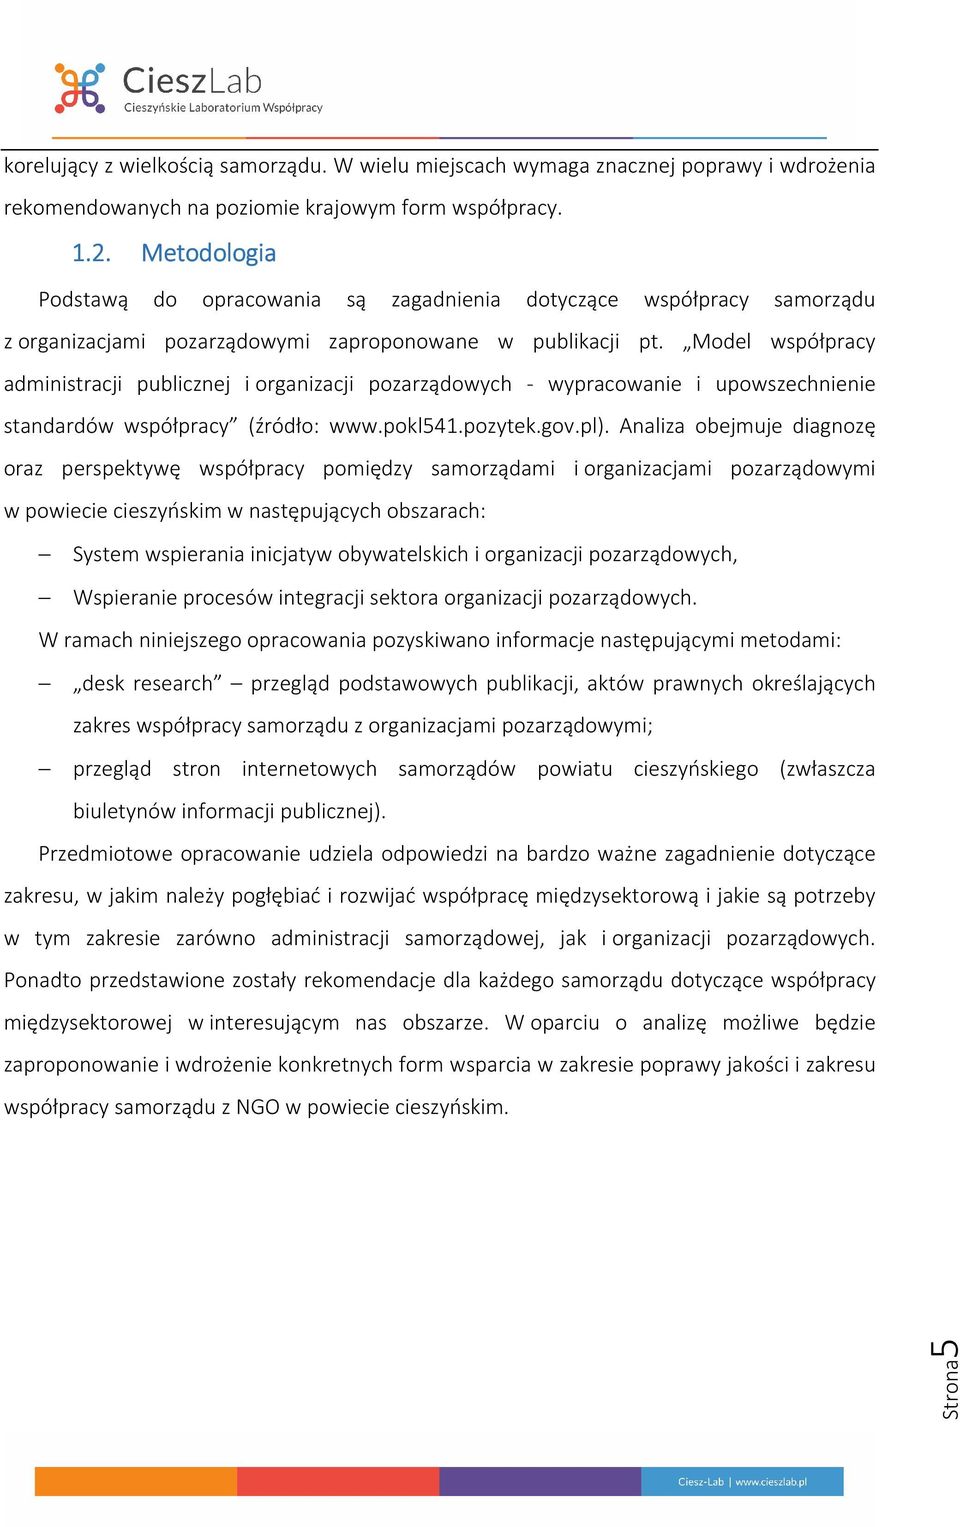 Model współpracy administracji publicznej i organizacji pozarządowych - wypracowanie i upowszechnienie standardów współpracy (źródło: www.pokl541.pozytek.gov.pl).